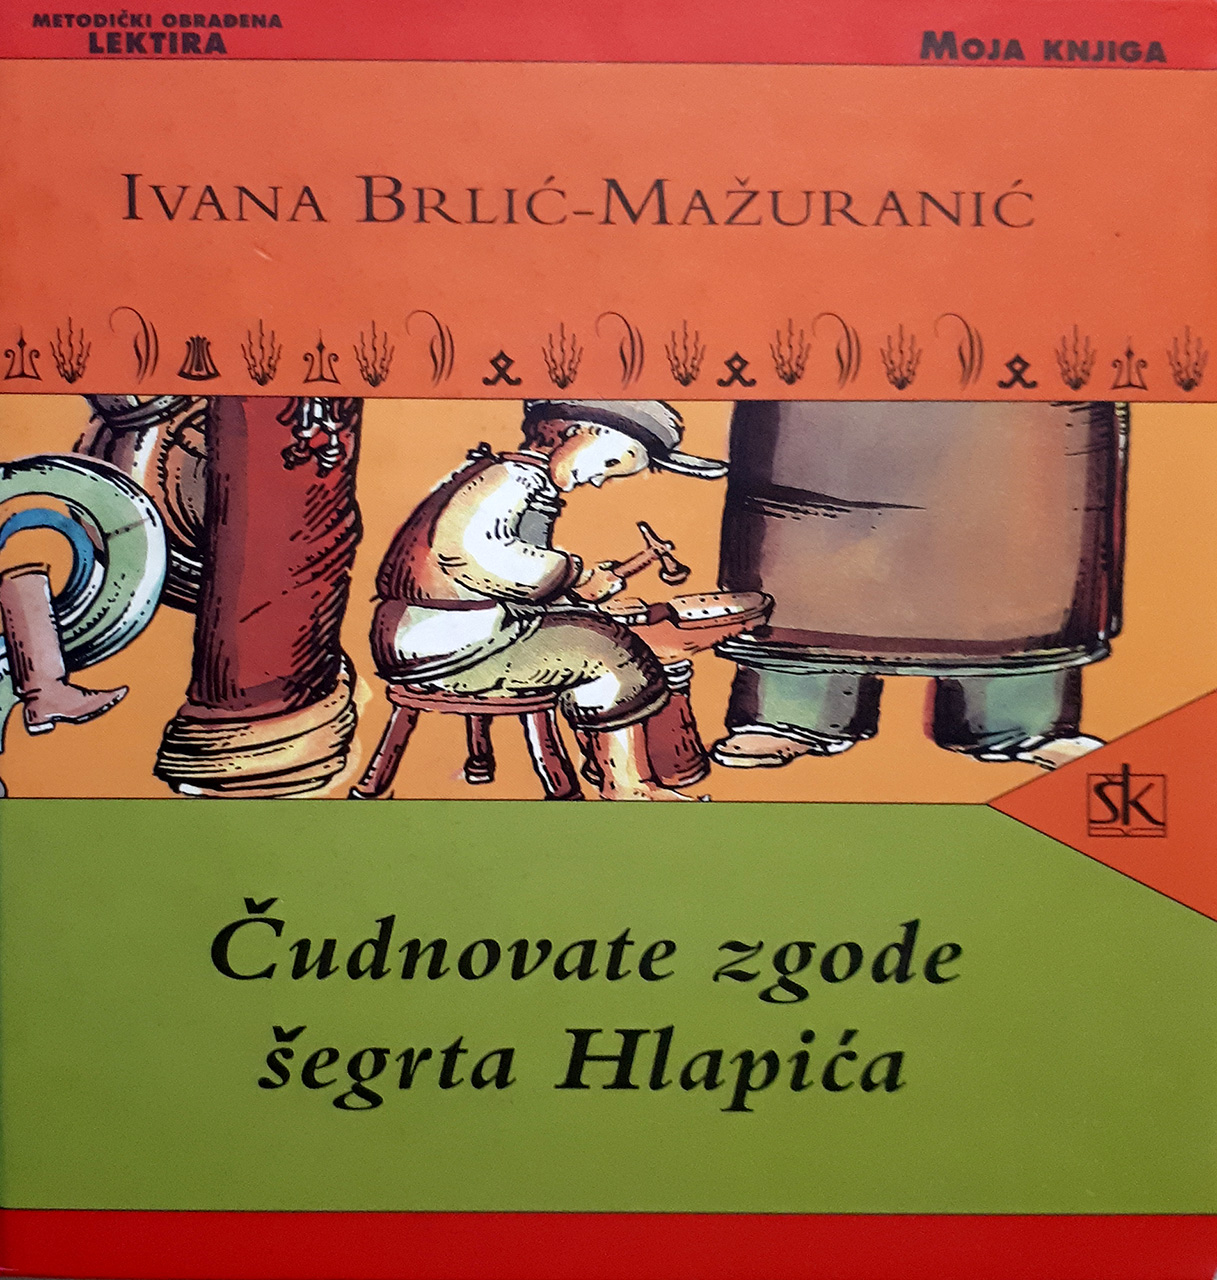 Naslovnica knjige Ivane Brlić-Mažuranić 